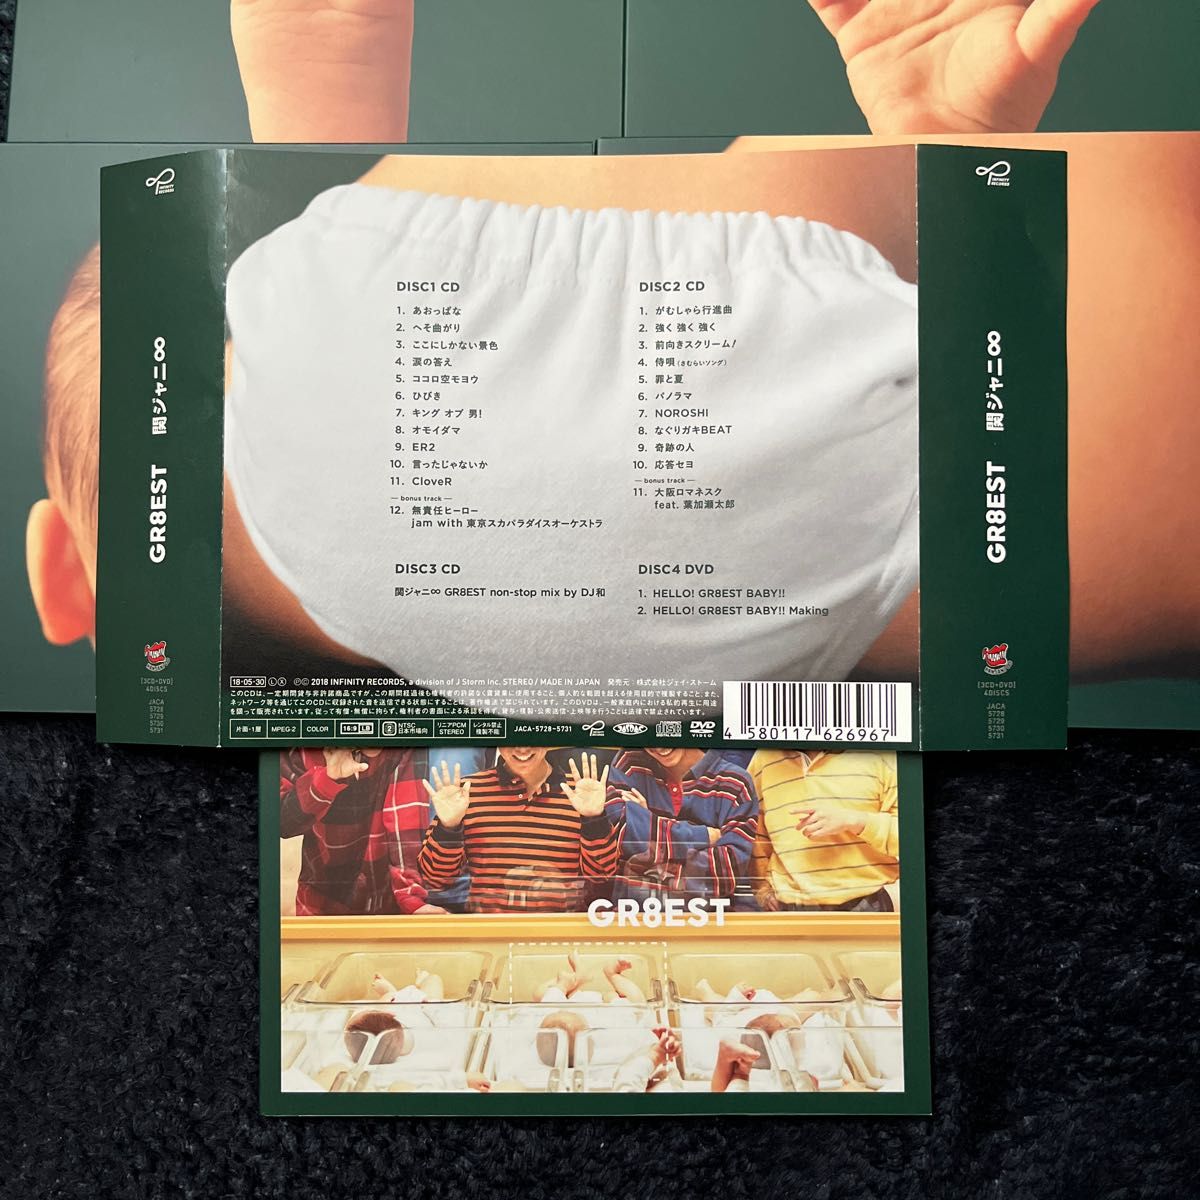 関ジャニ∞限定盤 関ジャニ∞ 3CD+DVD/GR8EST 18/5/30発売